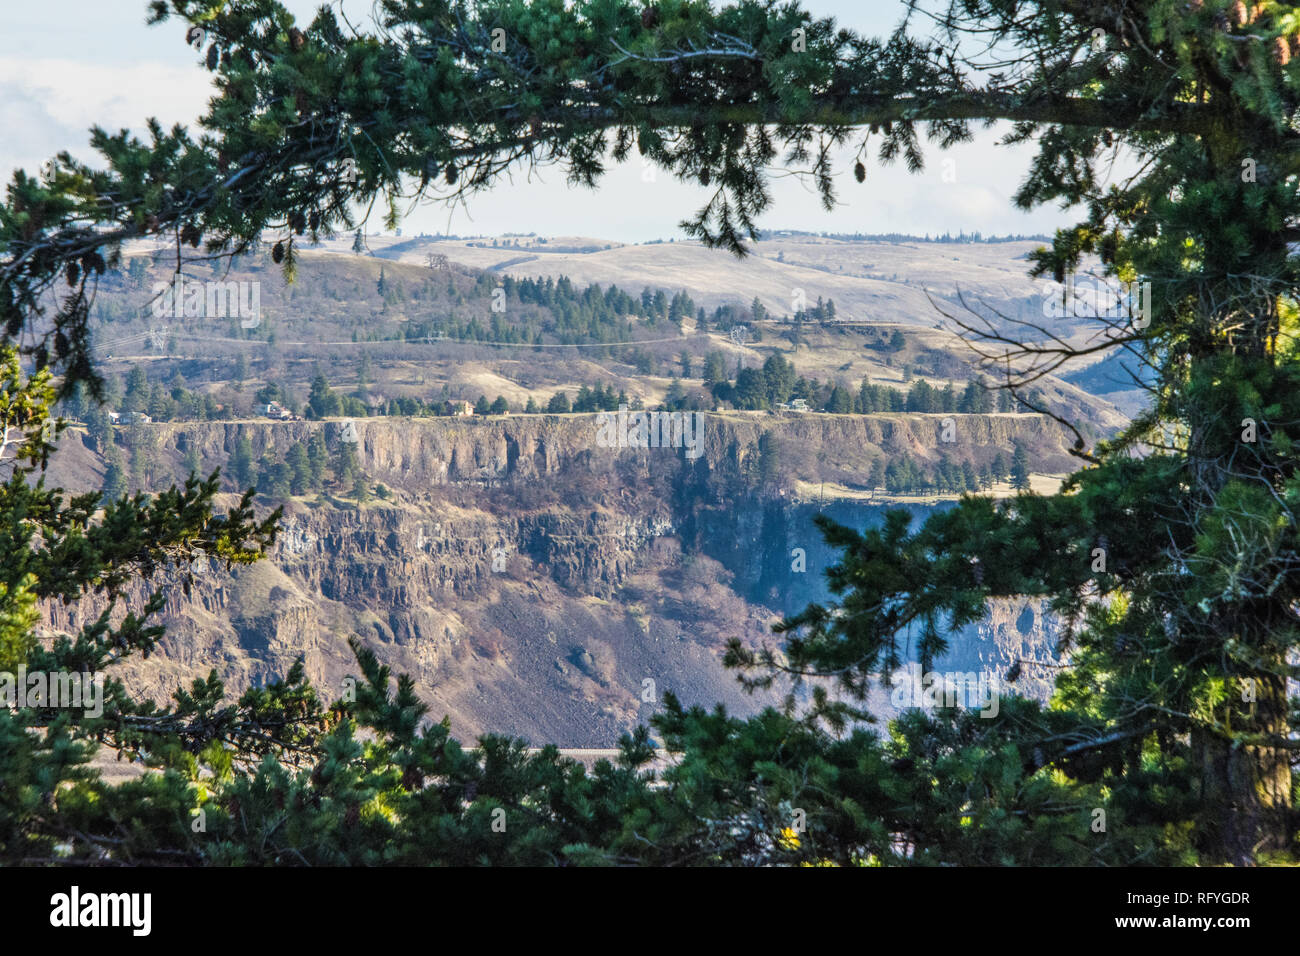 Columbia River Basaltfelsen im Staat Washington Seite des Columbia River, gesehen von der Oregon State-Seite. Stockfoto